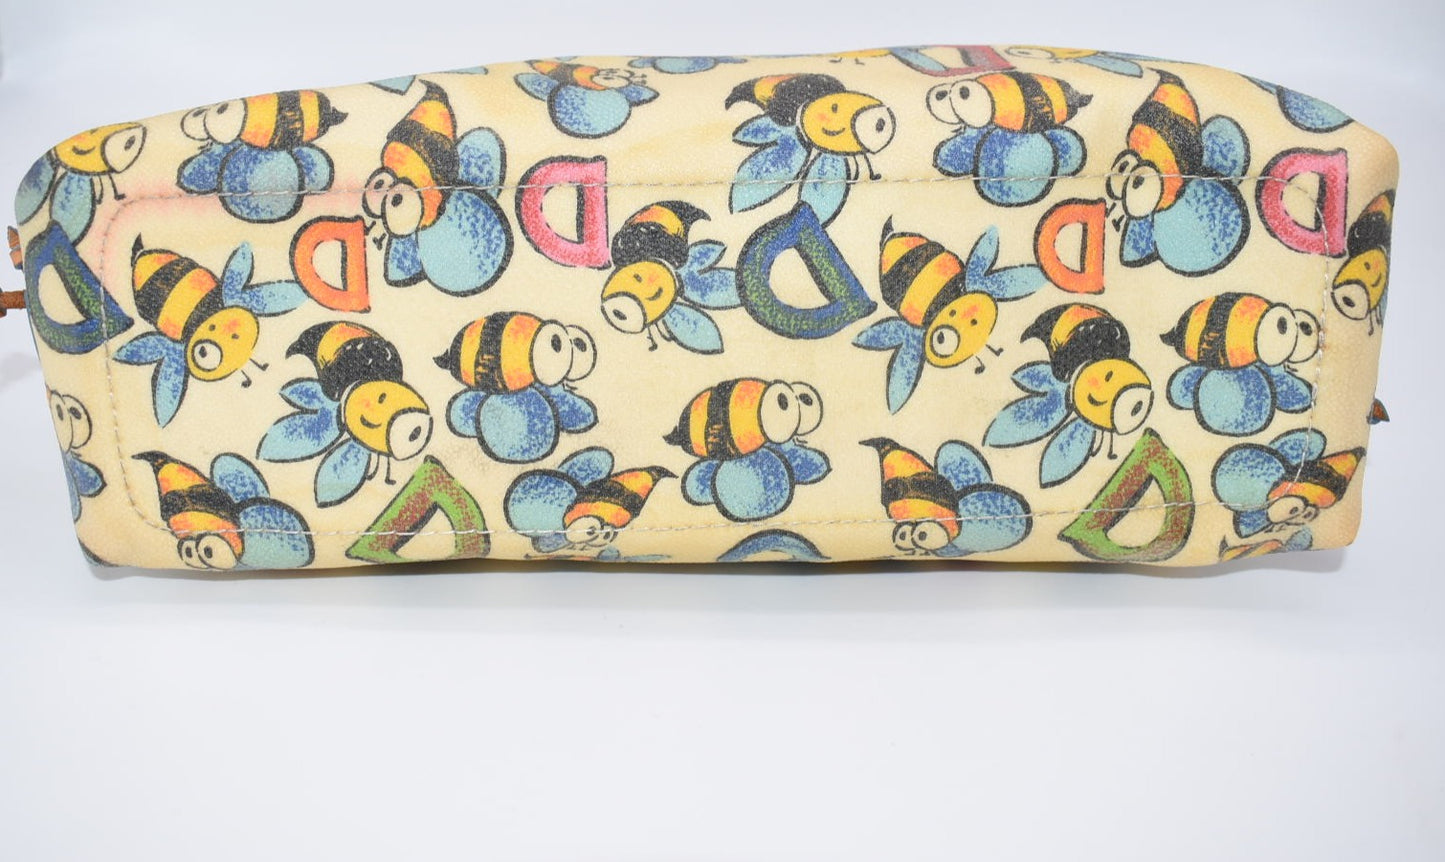 Dooney & Bourke Bumble Bee Shoulder Bag